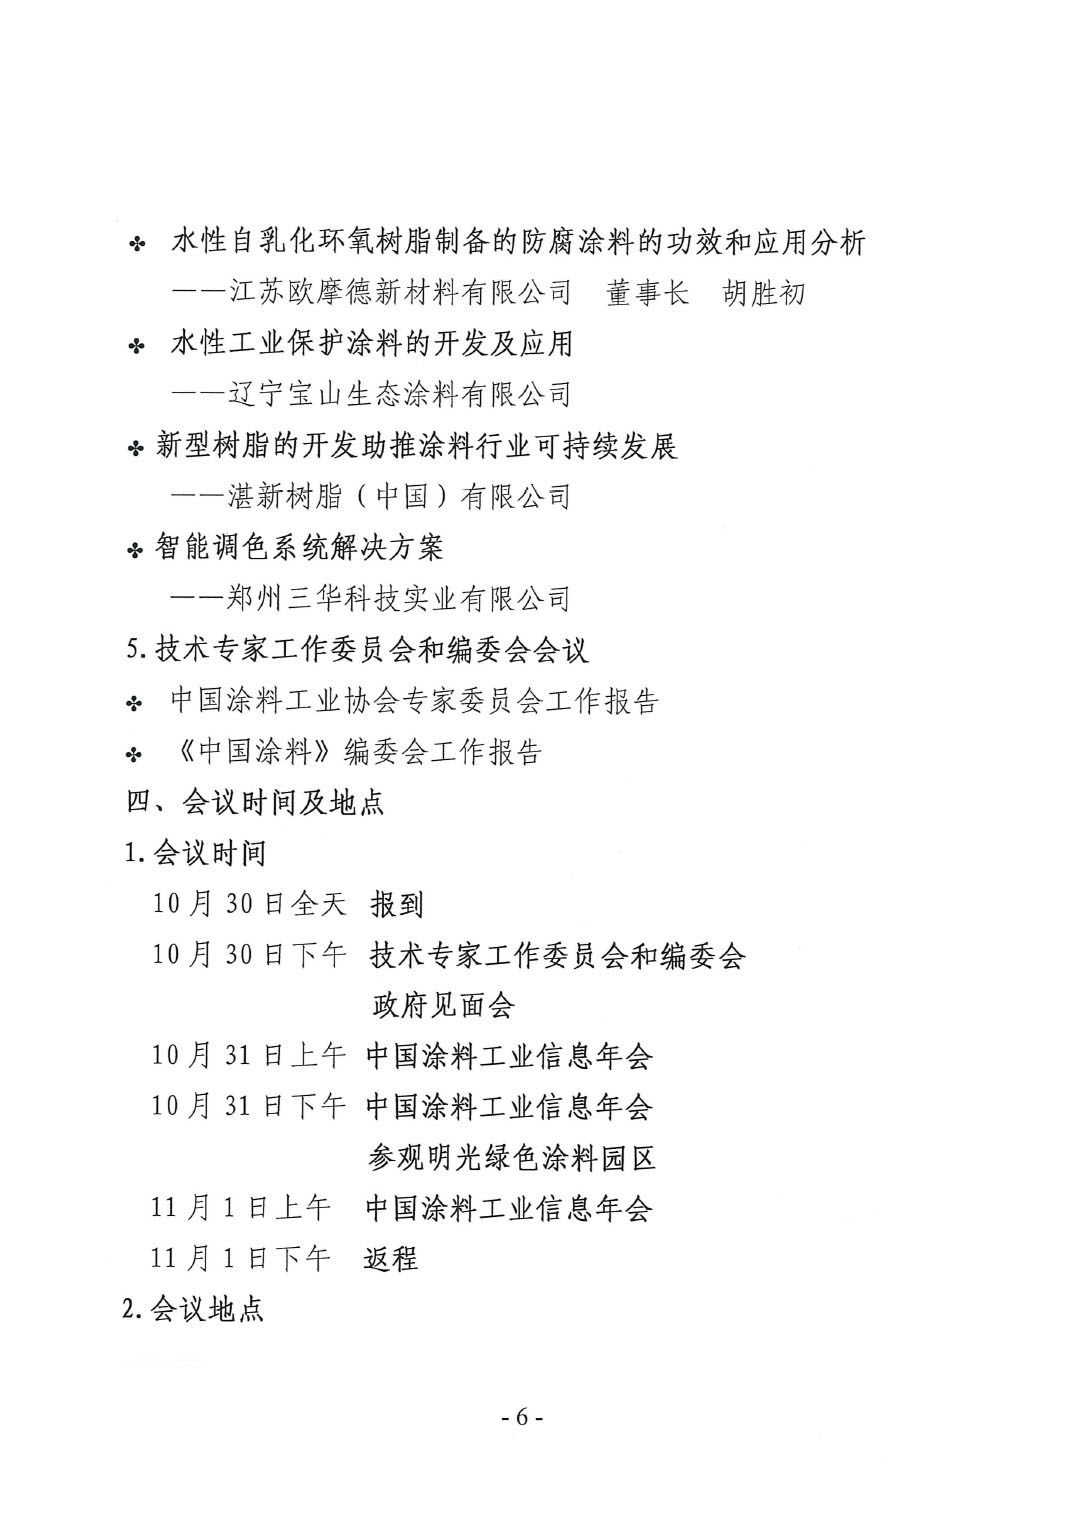 2023年中國涂料工業信息年會通知（明光）1017-6